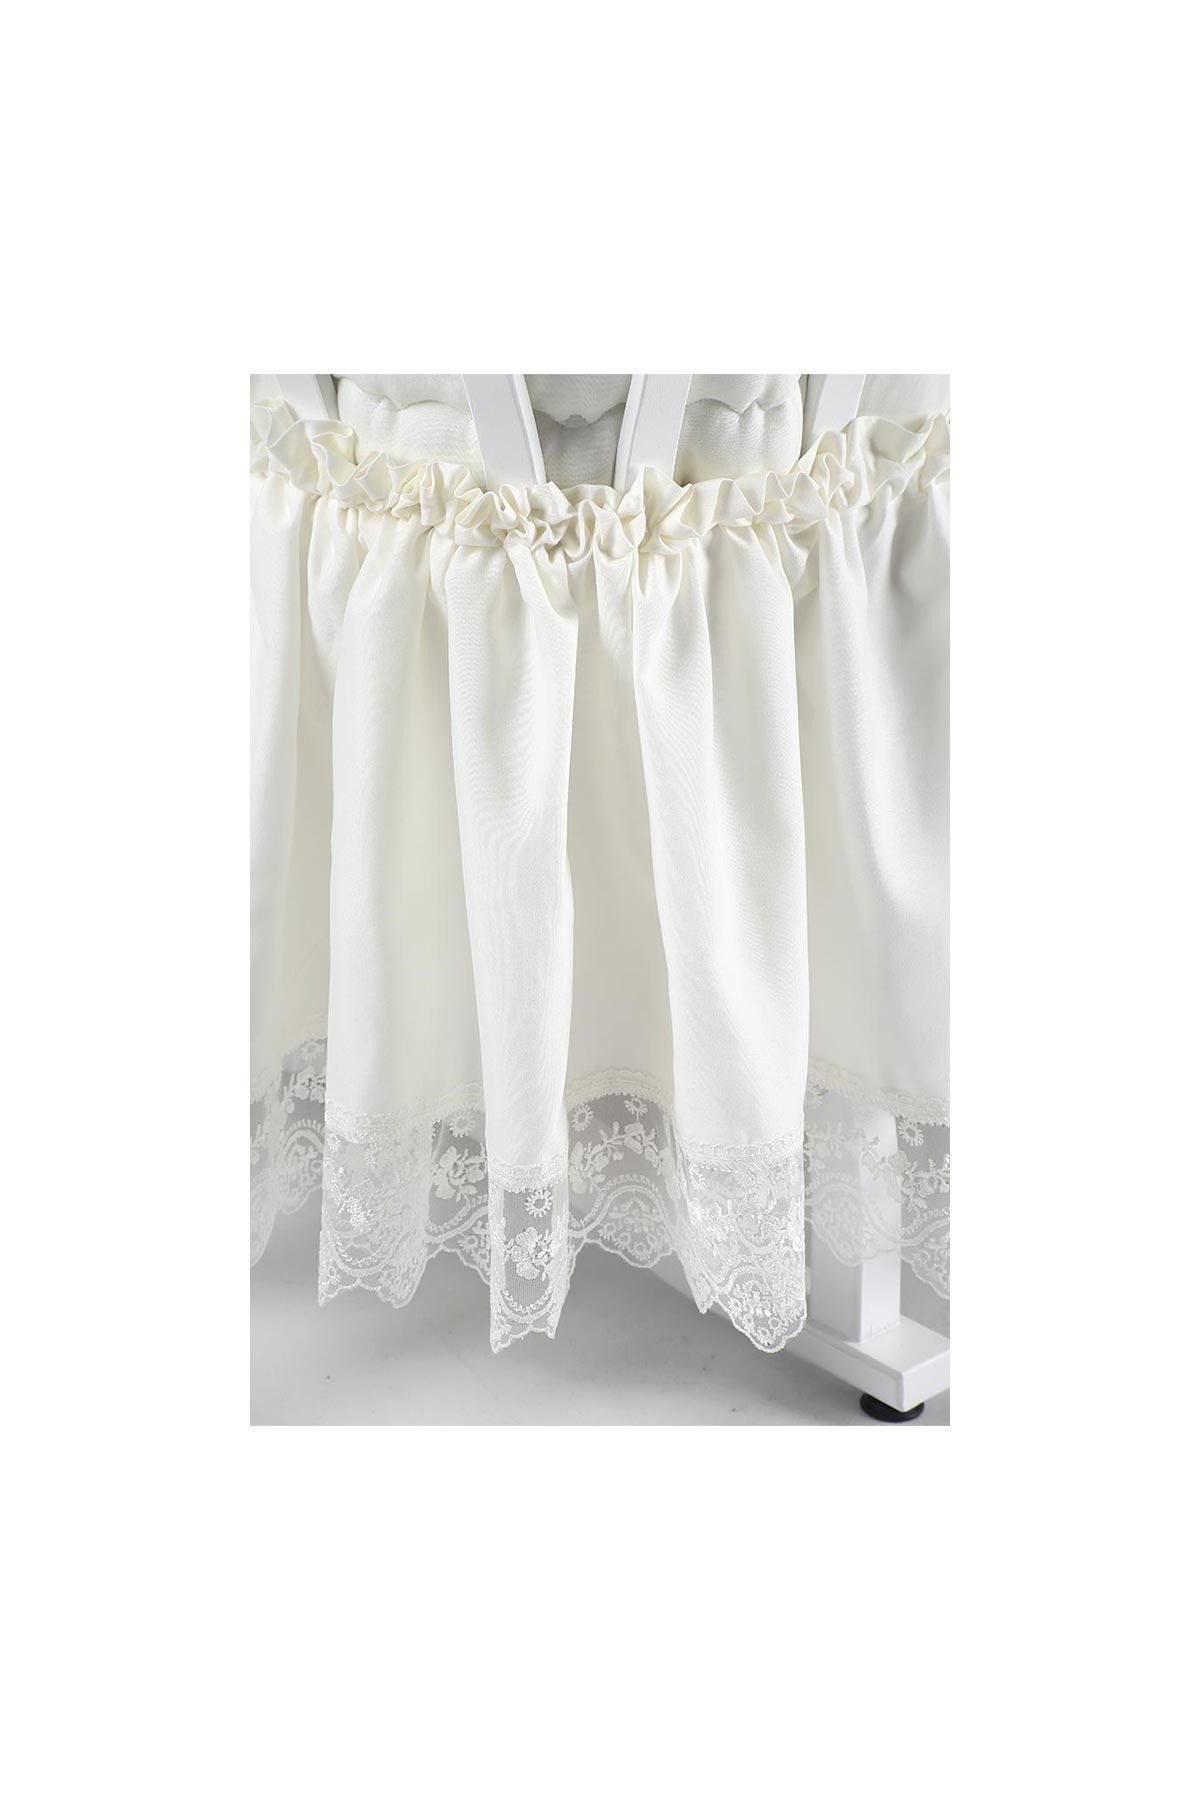 Tahterevalli Elegance Beşik Tekstil Beyaz Beyaz